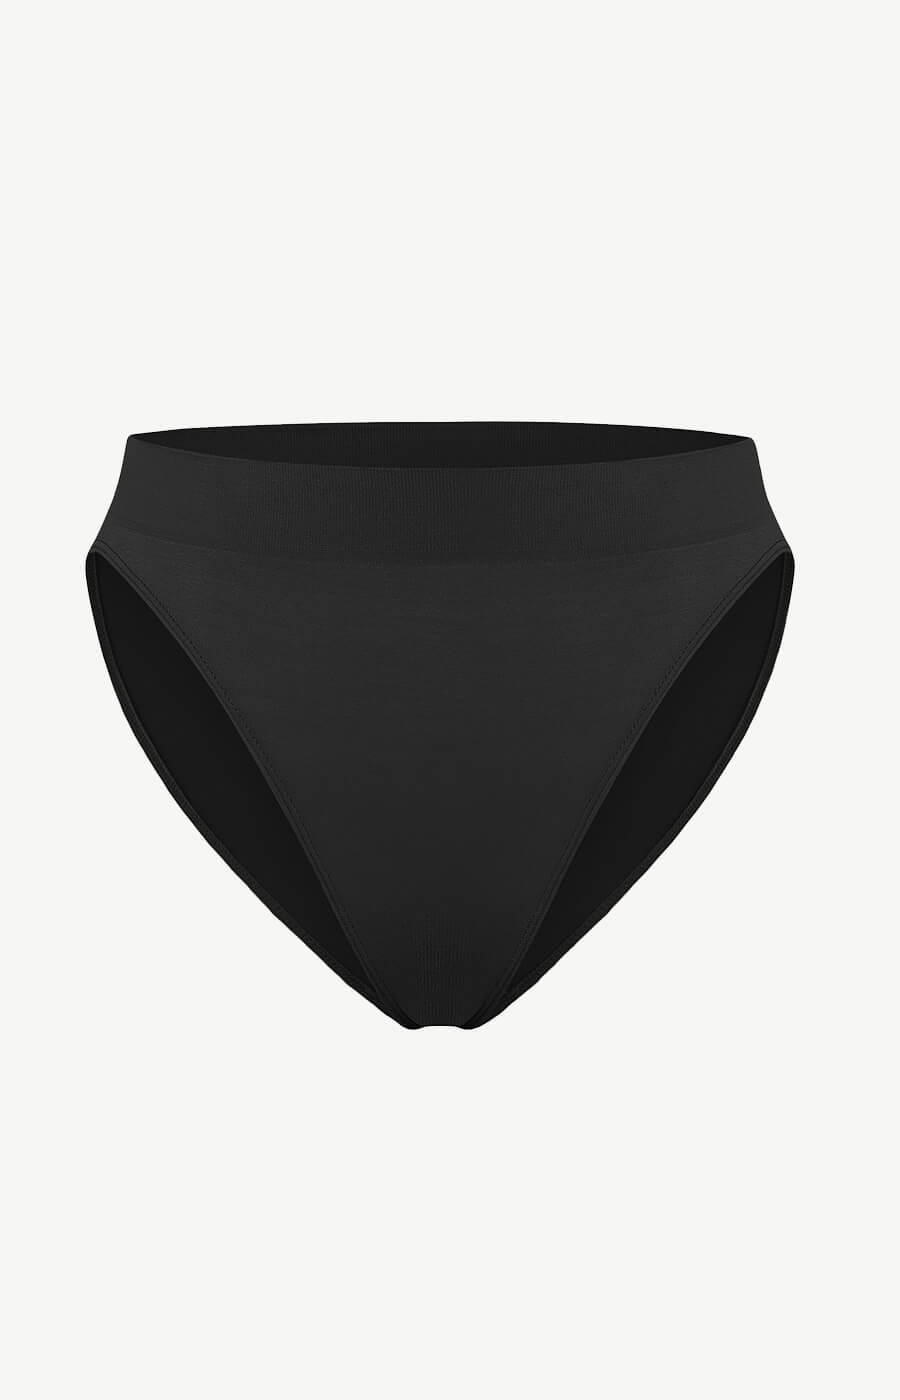 Black Seamless Underwear